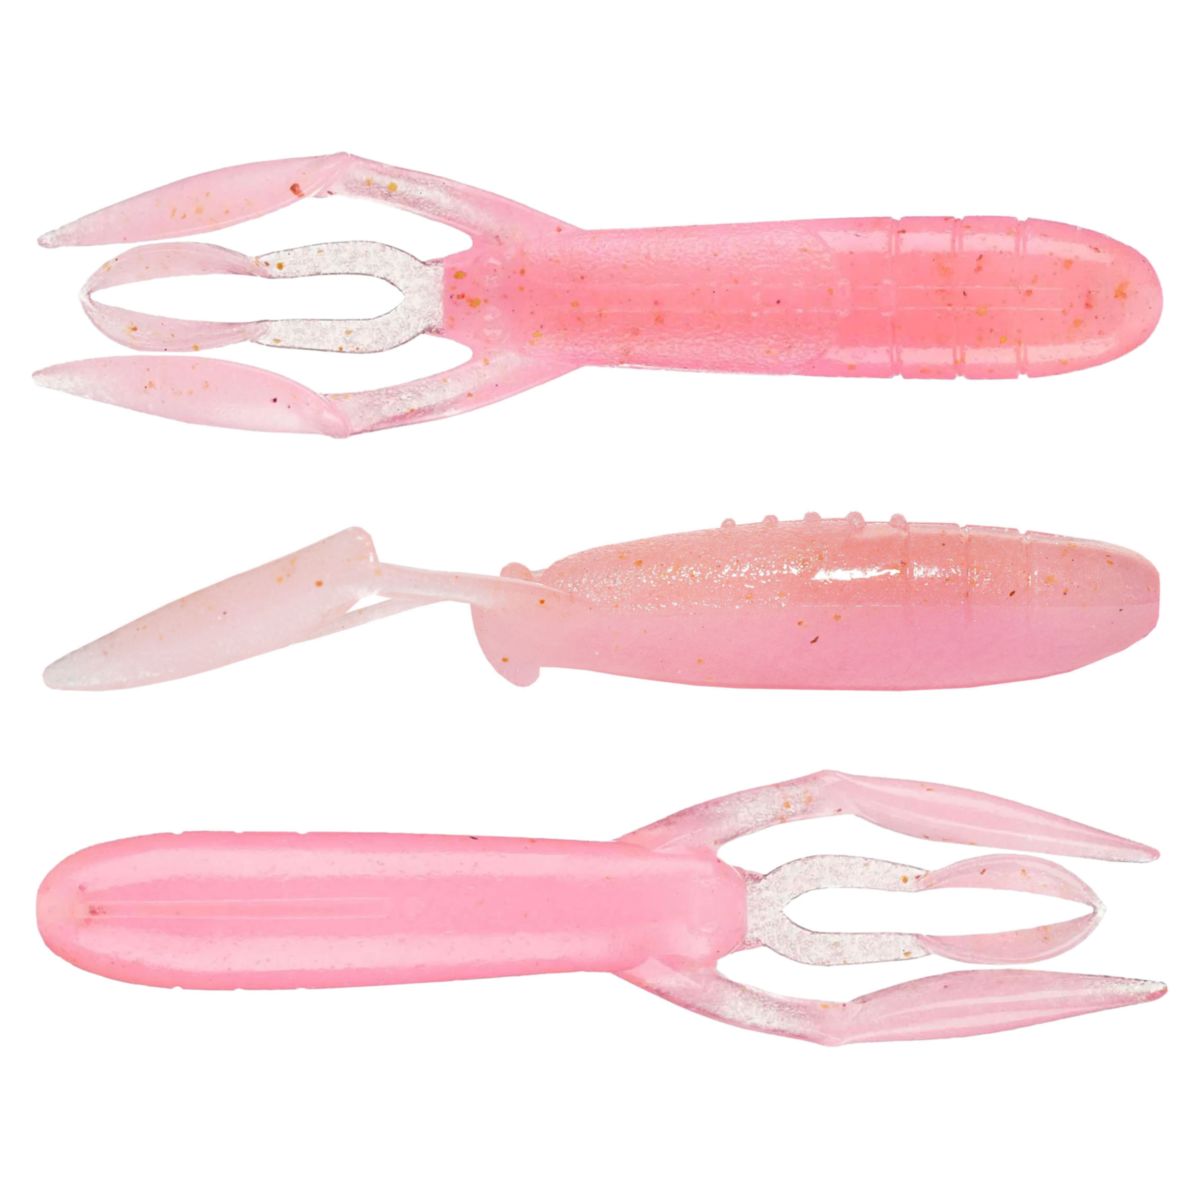 2” Paddle Tail Swimbait Soft Plastic Keitech Style Perch Crappie Bluegill  50pack - Conseil scolaire francophone de Terre-Neuve et Labrador